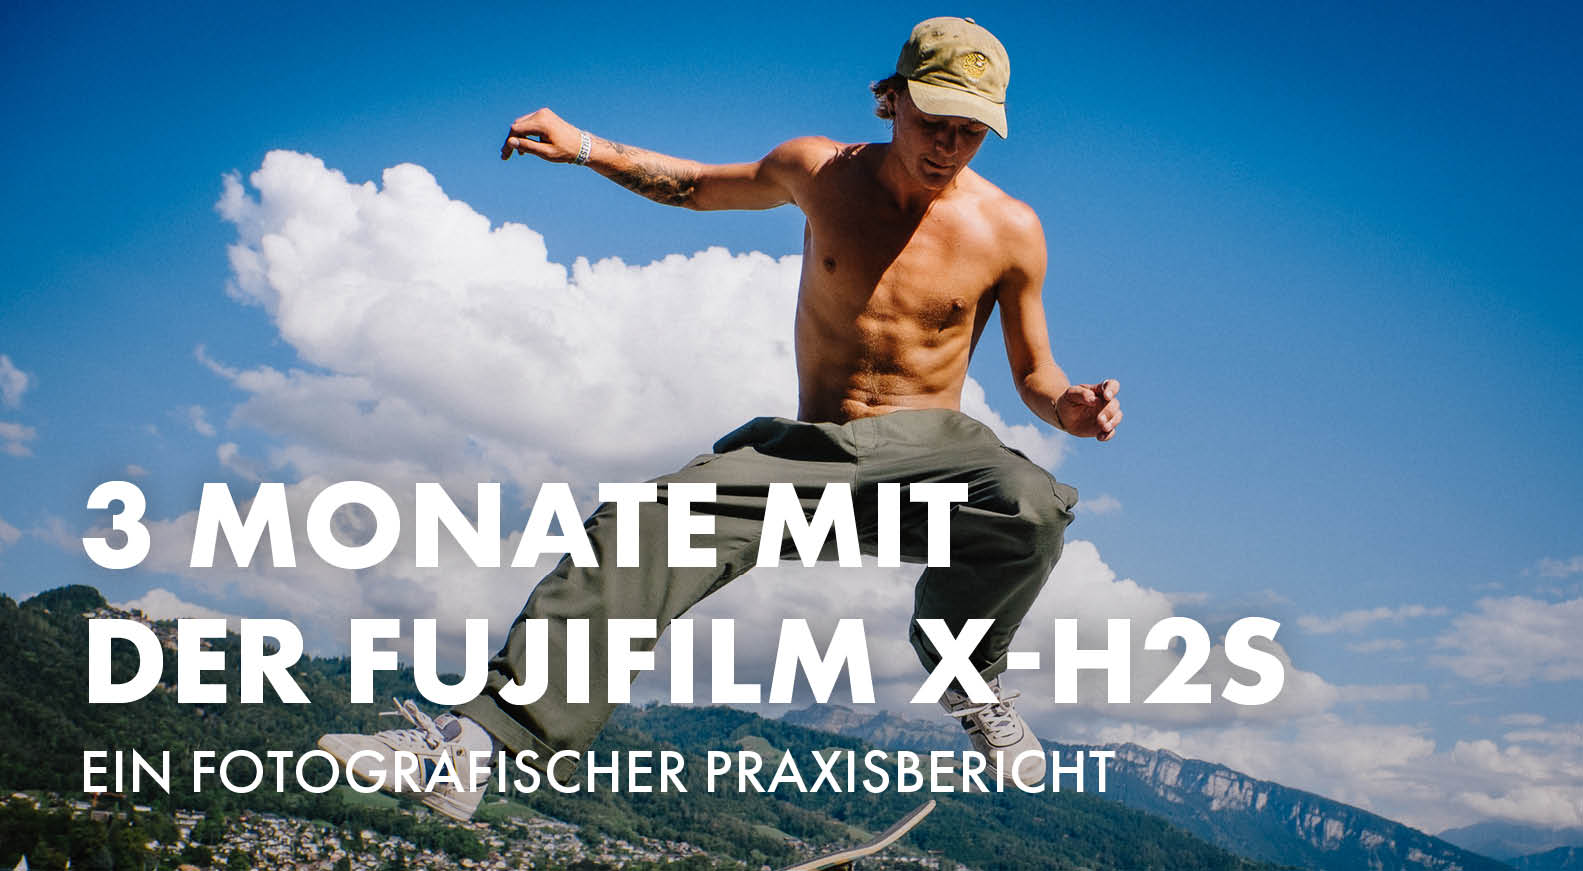 Drei Monate mit der Fujifilm X-H2s – Ein fotografischer Praxisbericht von Til Jentzsch